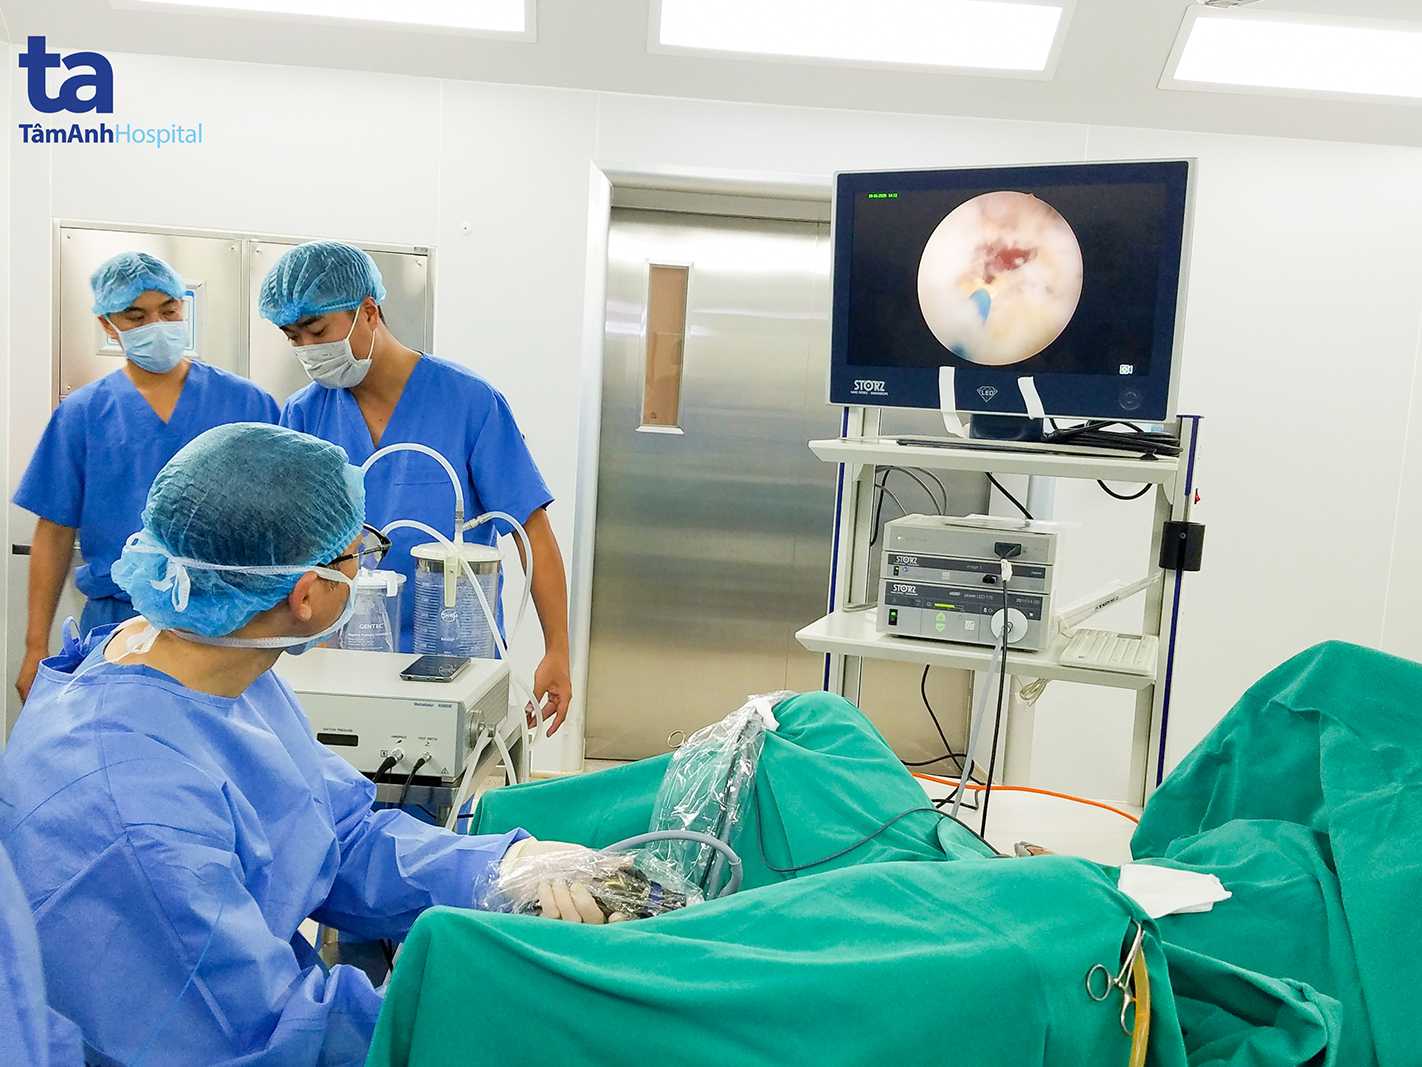 Ca phẫu thuật bóc tách khối u tuyến tiền liệt đòi hỏi bác sĩ dày dặn kinh nghiệm, chuyên sâu về tiết niệu và bệnh viện có trang thiết bị hiện đại nâng cao tỷ lệ thành công.